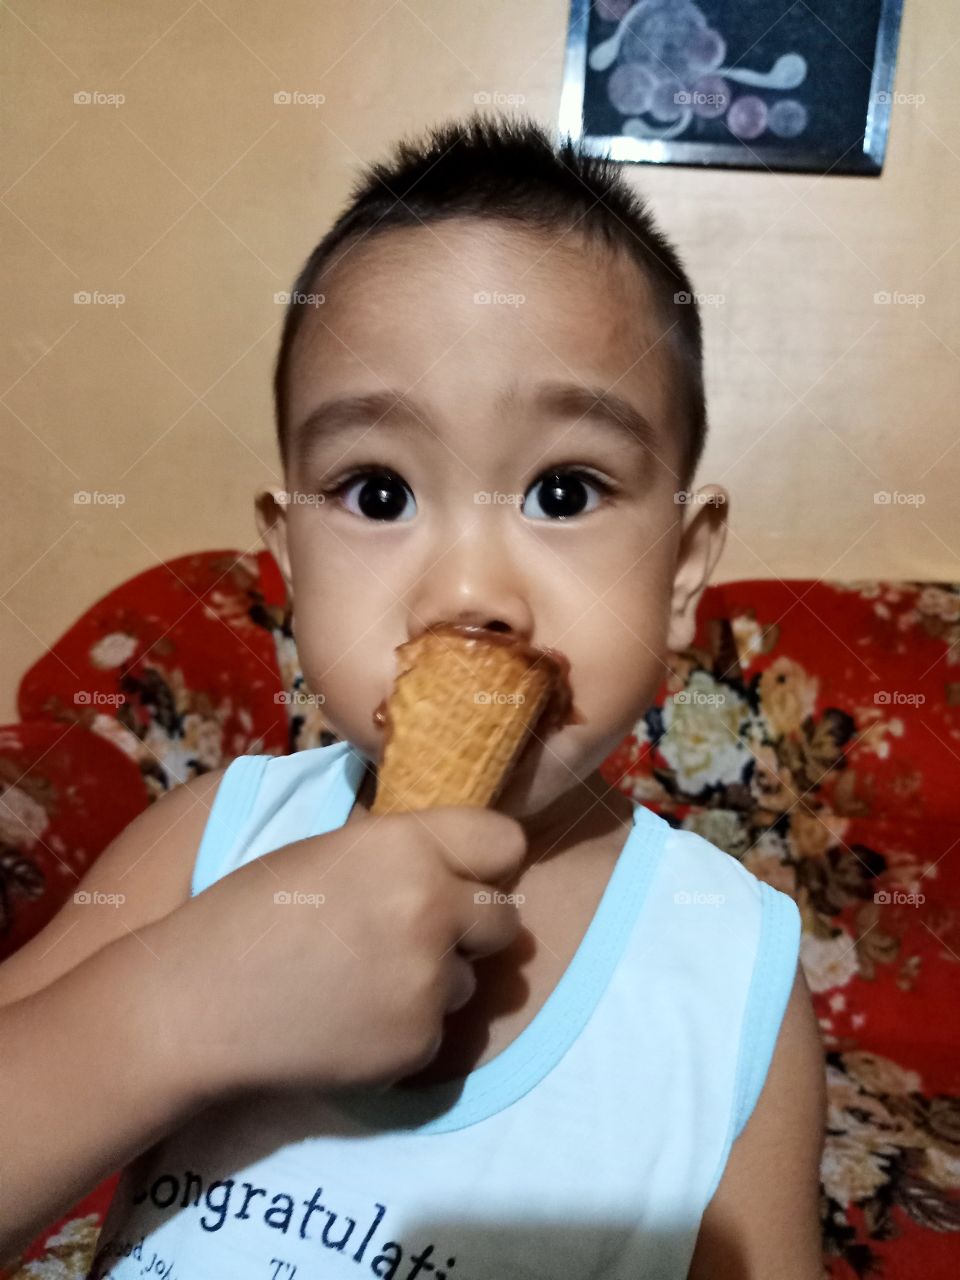 Cutie eating ice cream.